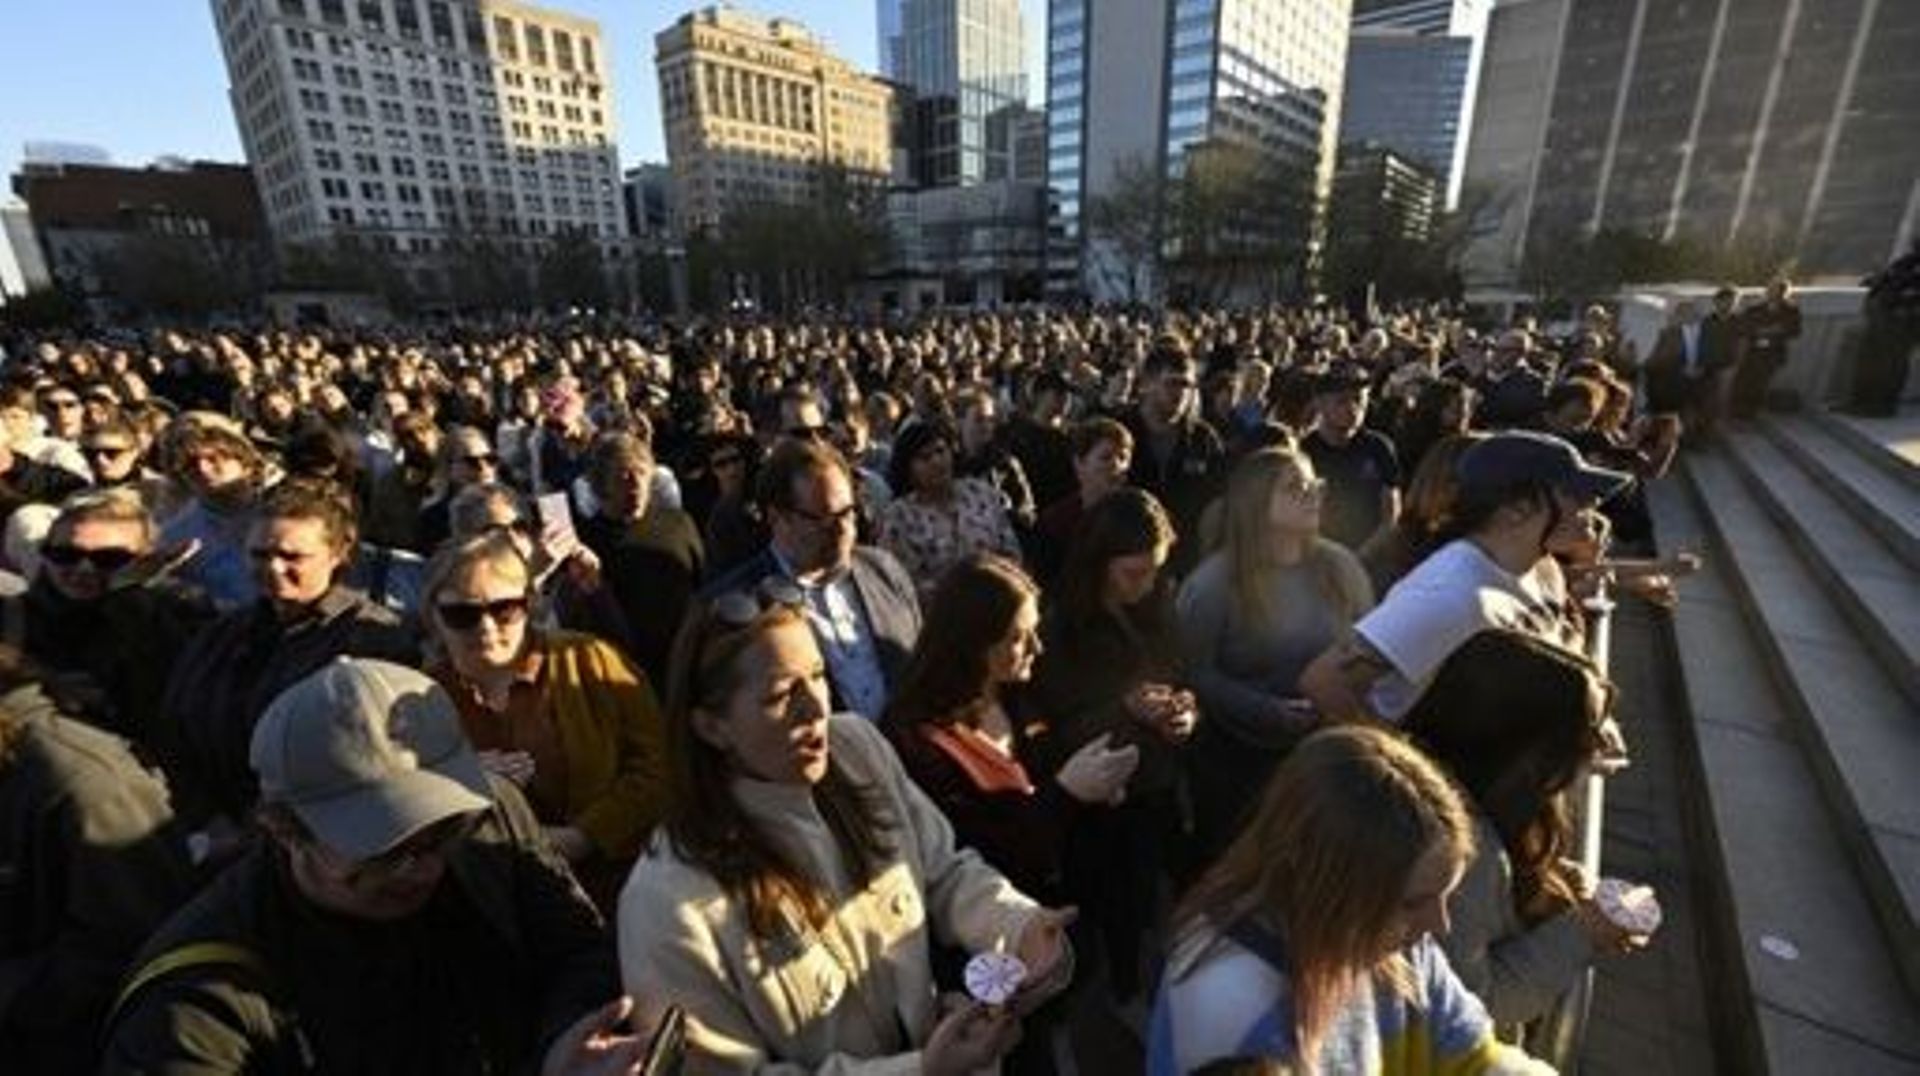 Des centaines de personnes assistent à une veillée publique pour honorer les victimes et les survivants d'une fusillade à la Covenant School de Nashville, Tennessee, le 29 mars 2023. Le jeune homme de 28 ans qui a abattu six personnes dans une école prima